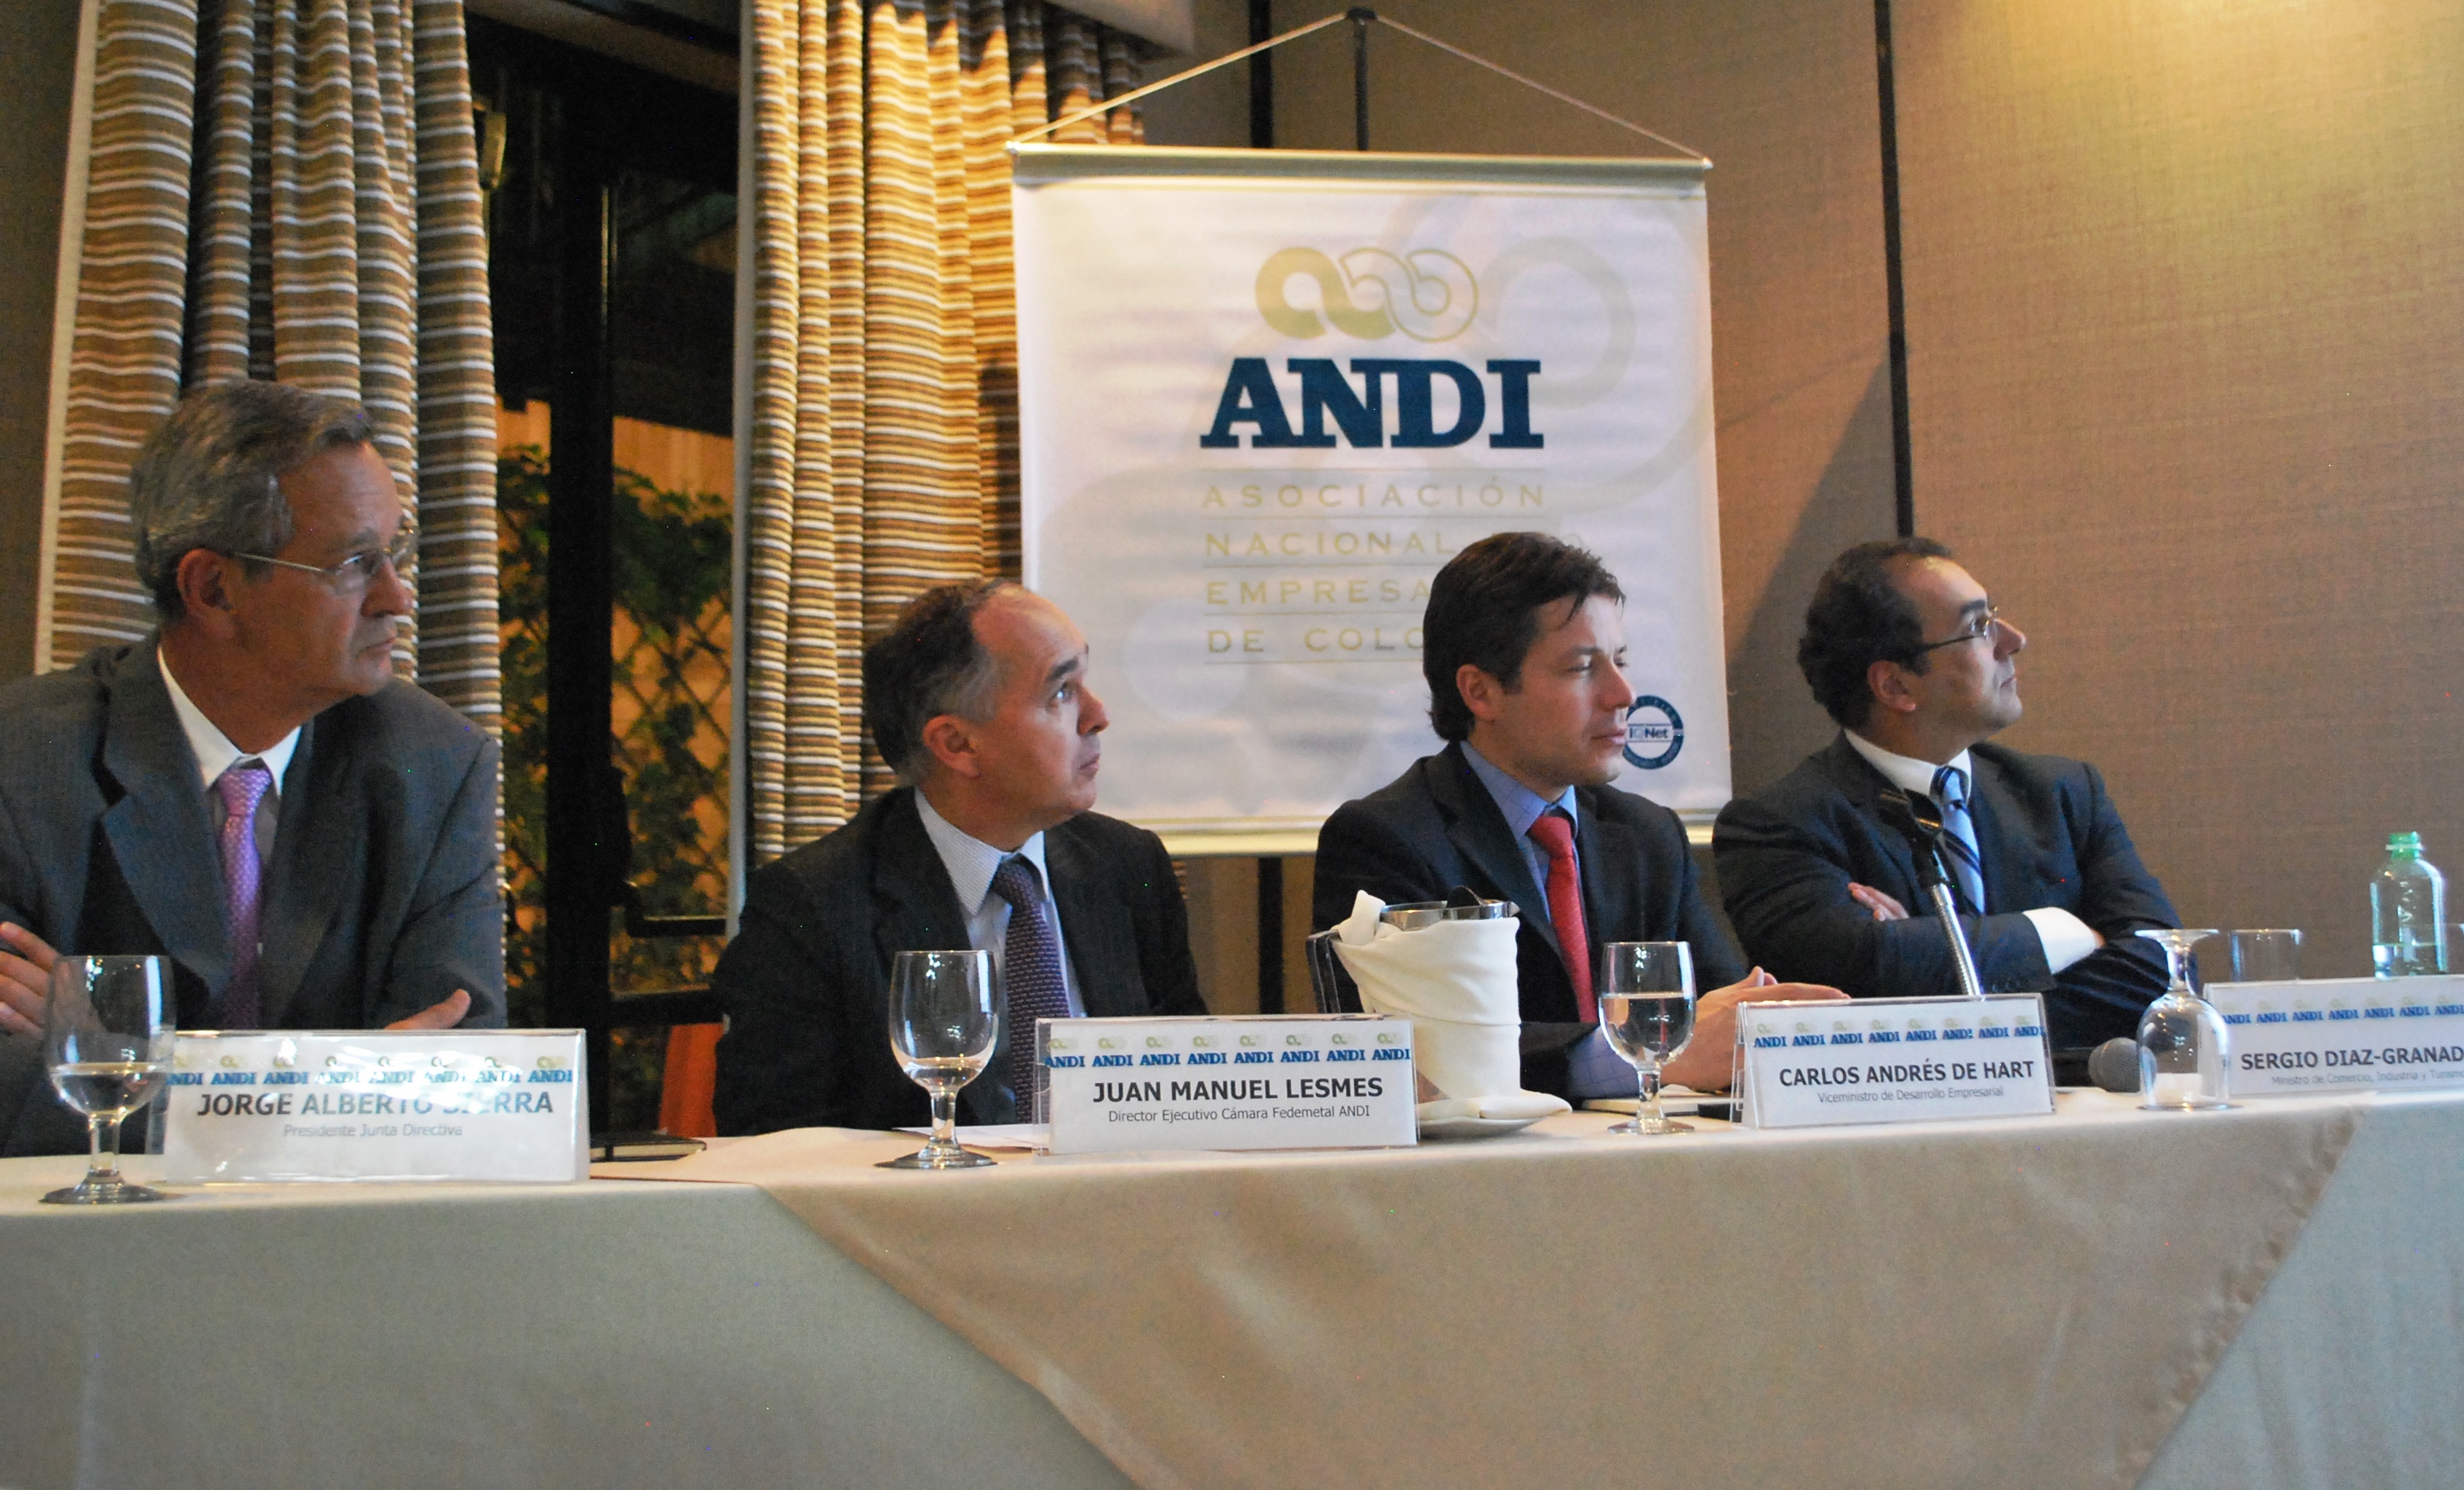 De izquierda a derecha:  Jorge Alberto Sierra, Presidente de la Junta directiva de la Cámara de FEDEMETAL de la Andi; Juan Manuel Lesmes, Director de la Cámara de FEDEMETAL de la ANDI; Carlos Andrés d